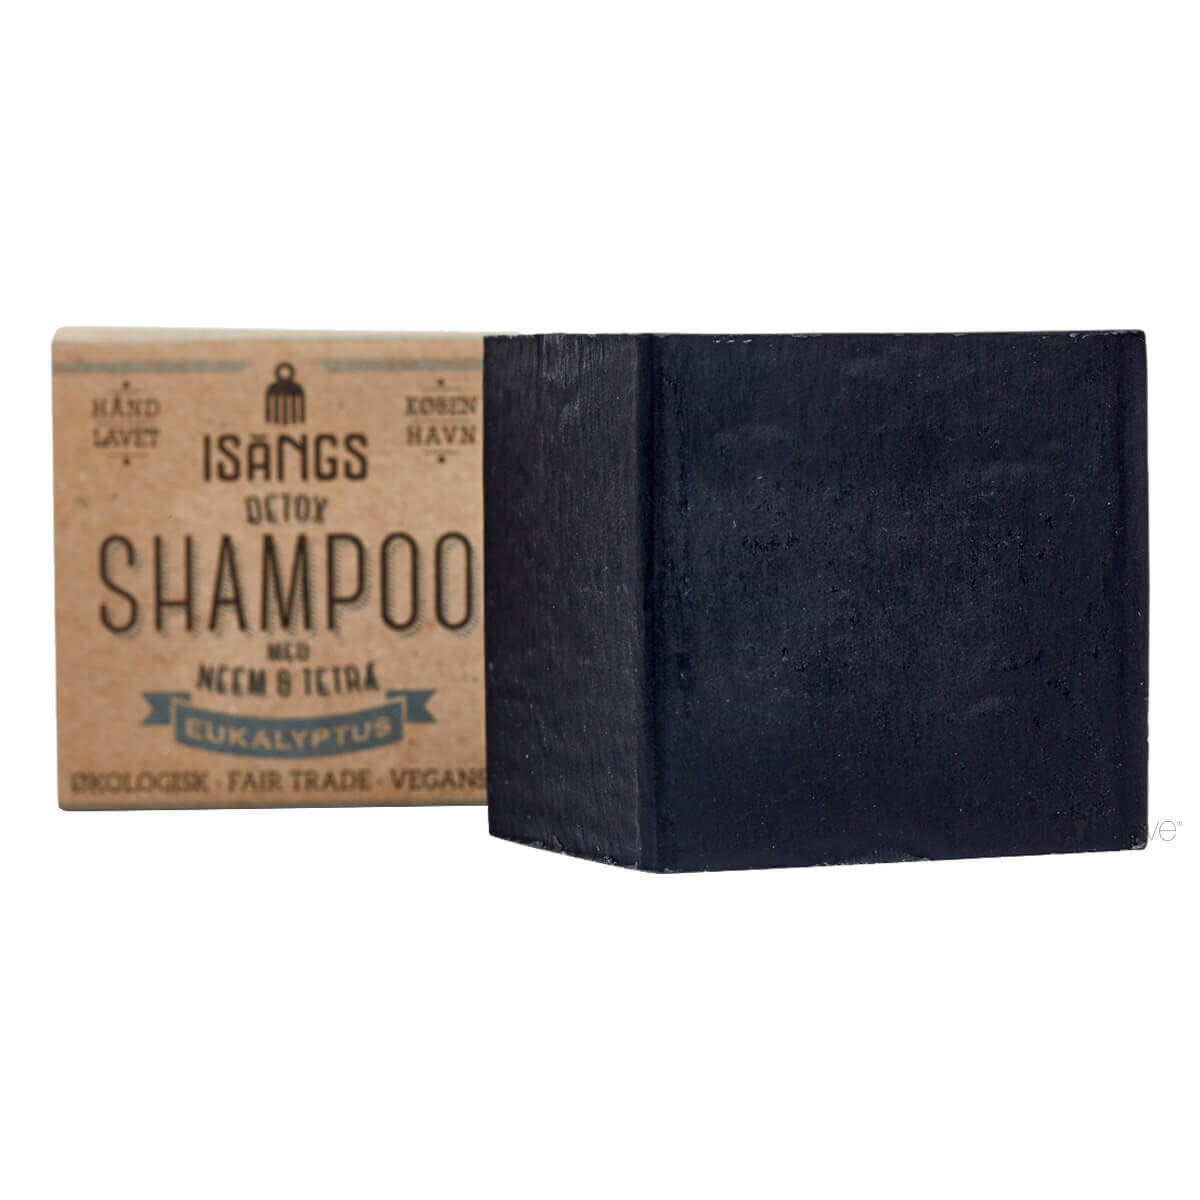 Billede af Isangs Detox Shampoo, Eukalyptus, 125 gr. hos Proshave